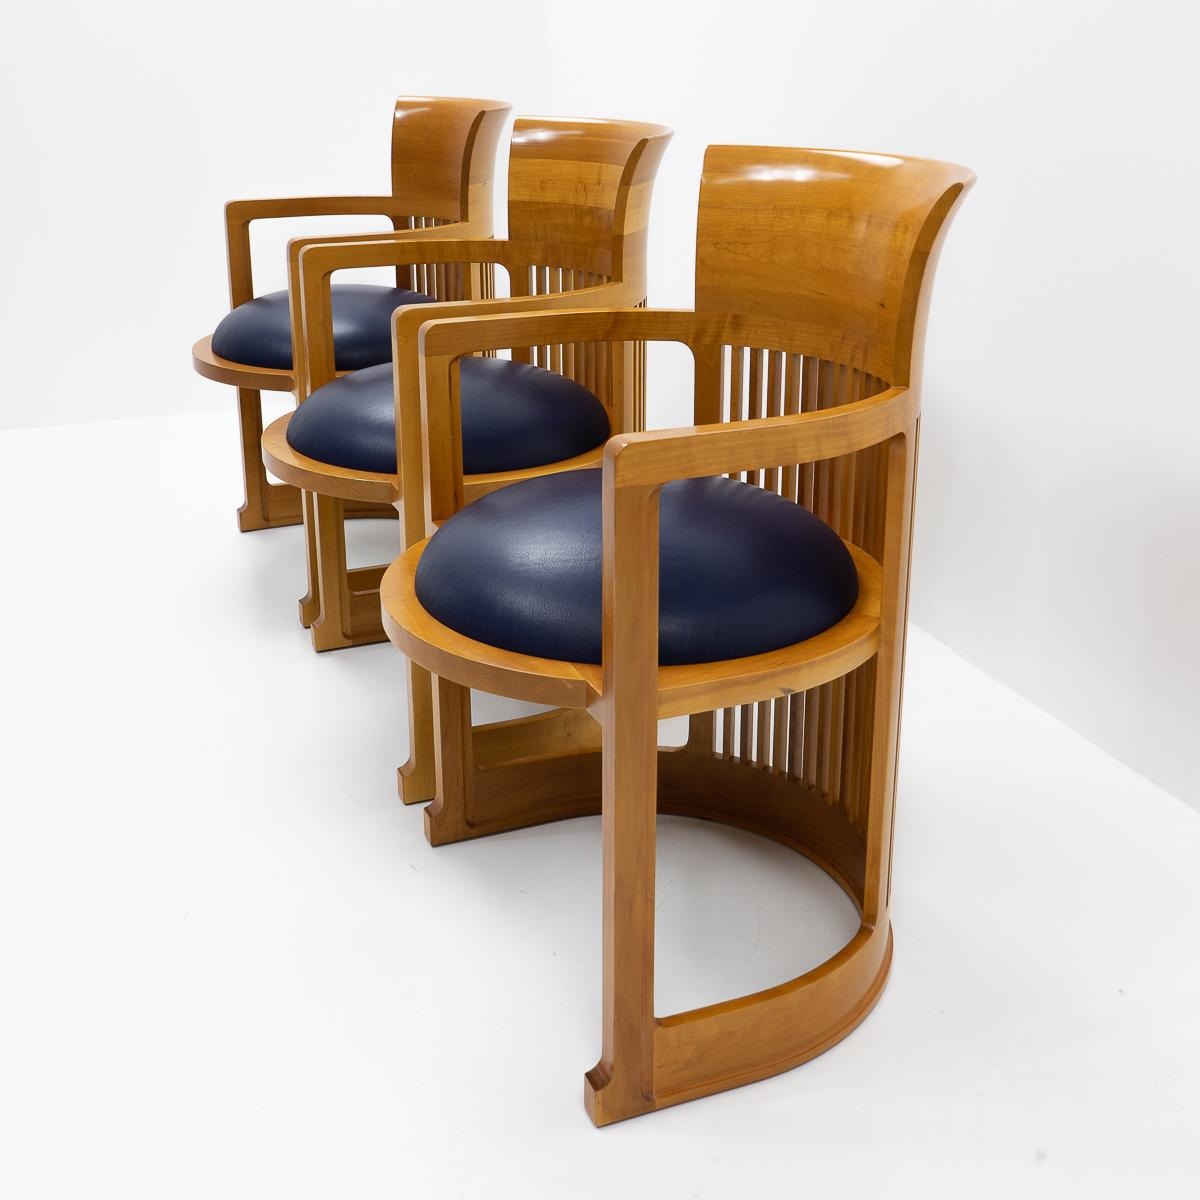 frank lloyd wright chair design